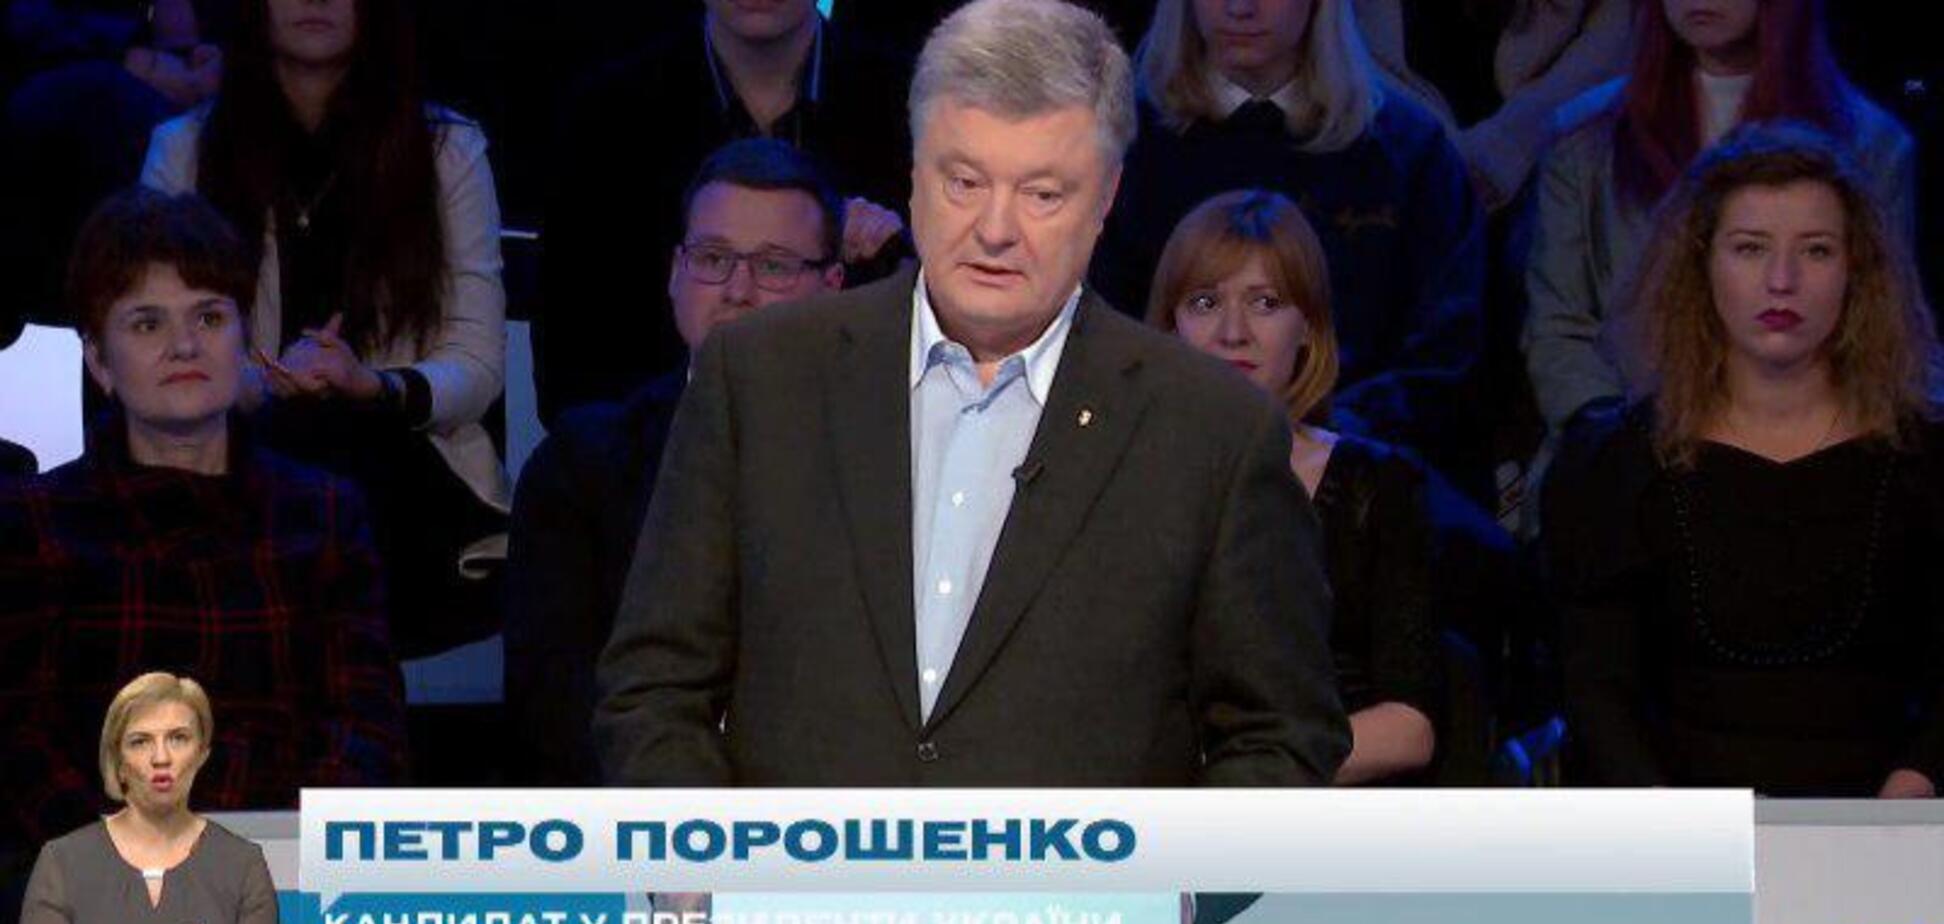 Зеленский отказался: Порошенко пришел на дебаты на 'Суспільне': видео онлайн